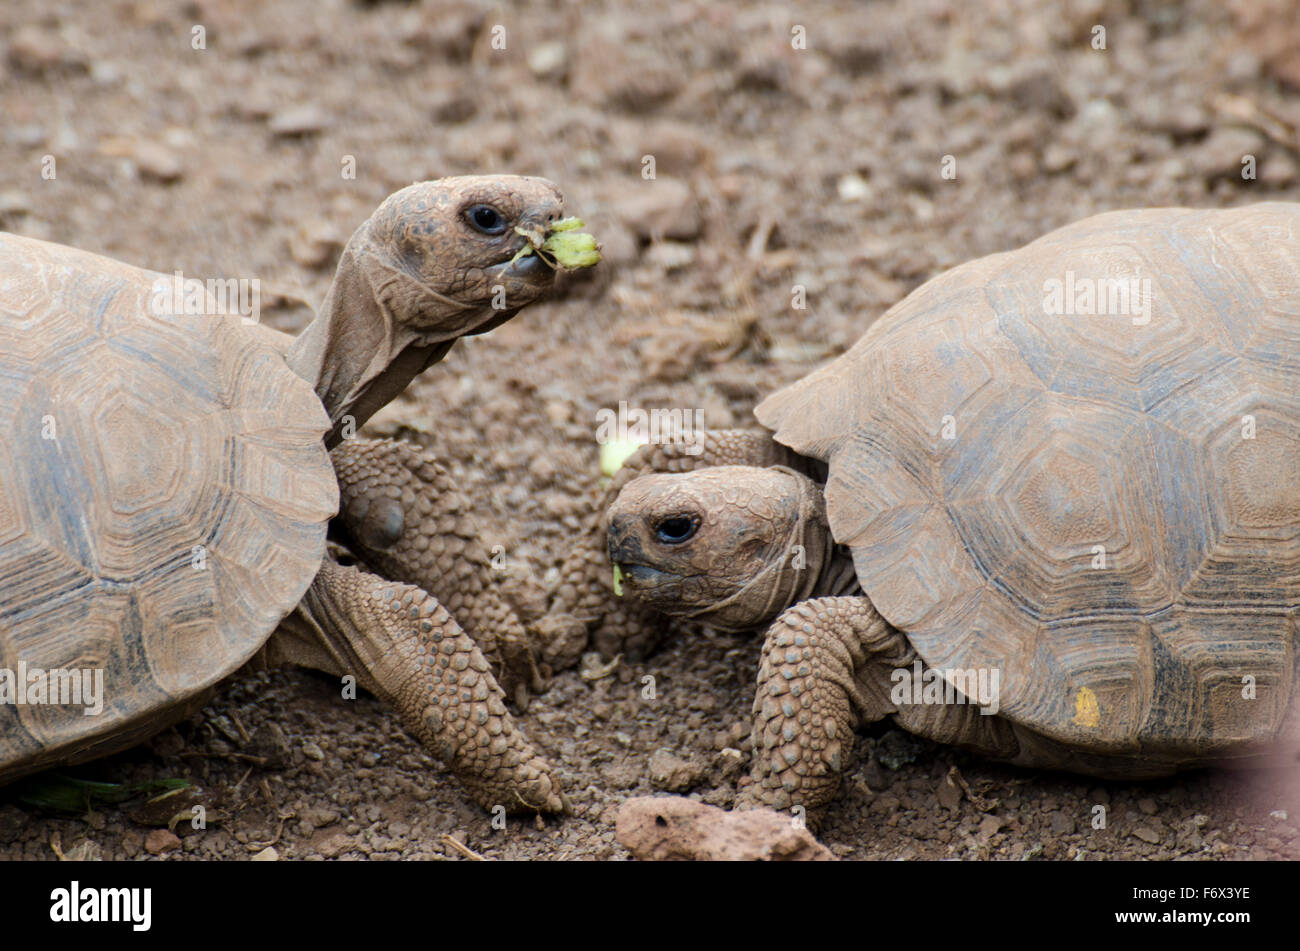 Les jeunes tortues des Galápagos (Chelonoidis nigra) à la Station de recherche Charles Darwin Banque D'Images